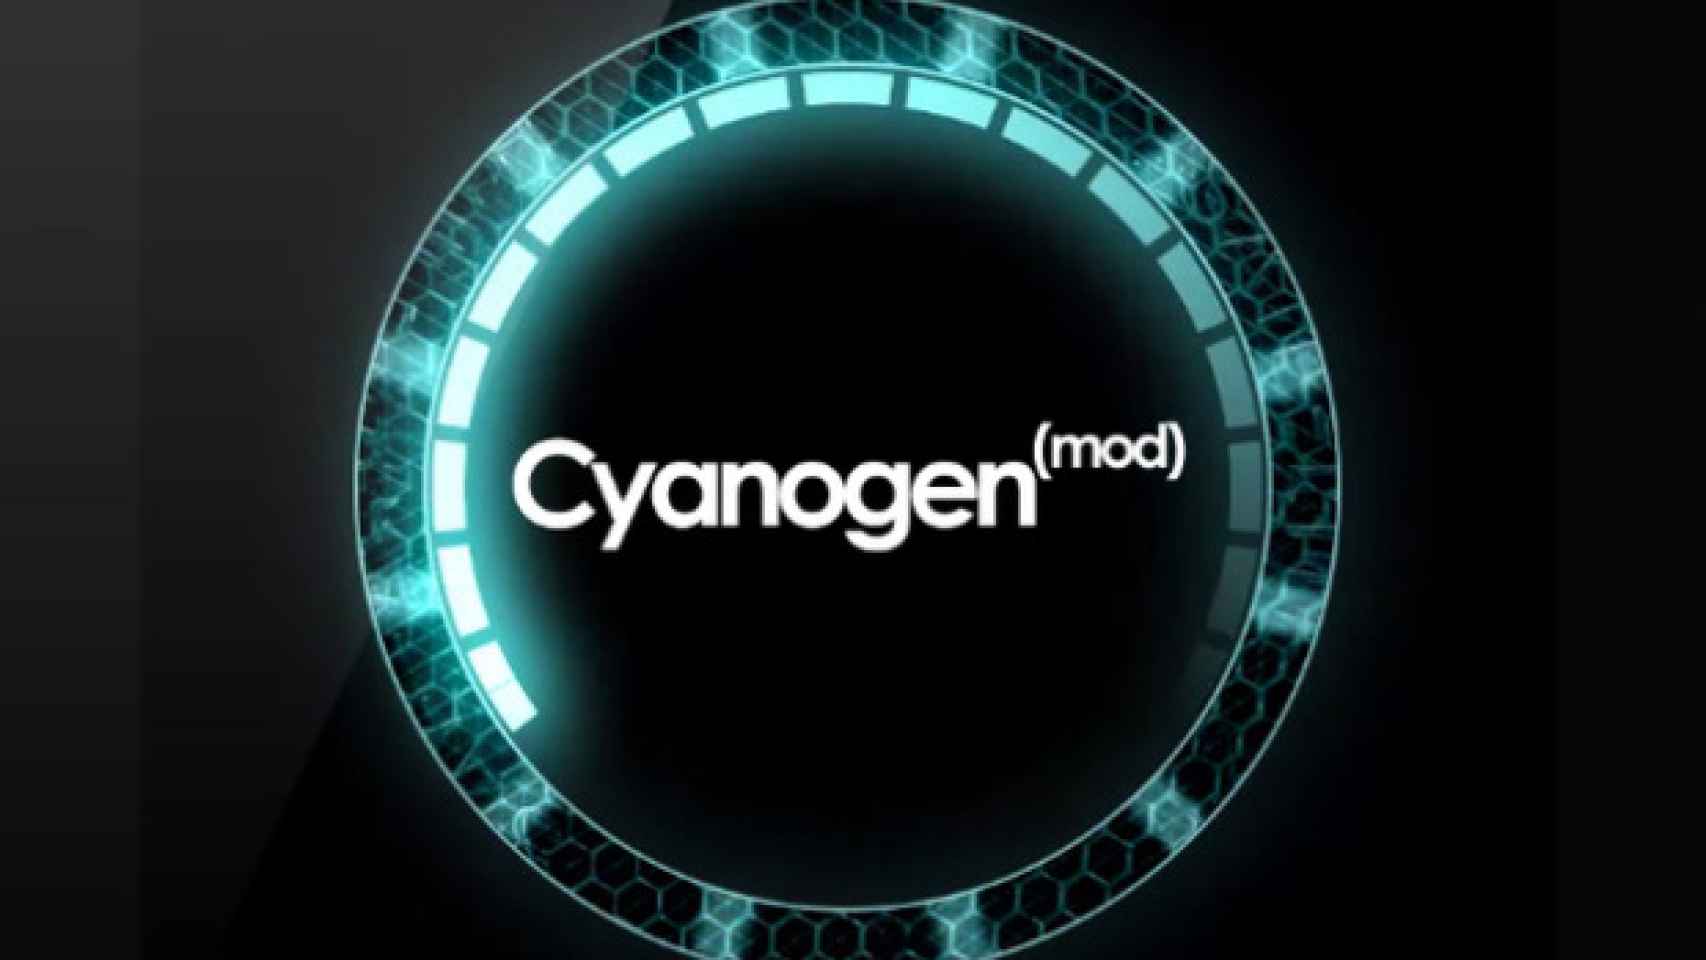 Fotos en HDR para casi todos gracias a la nueva actualización de CyanogenMod